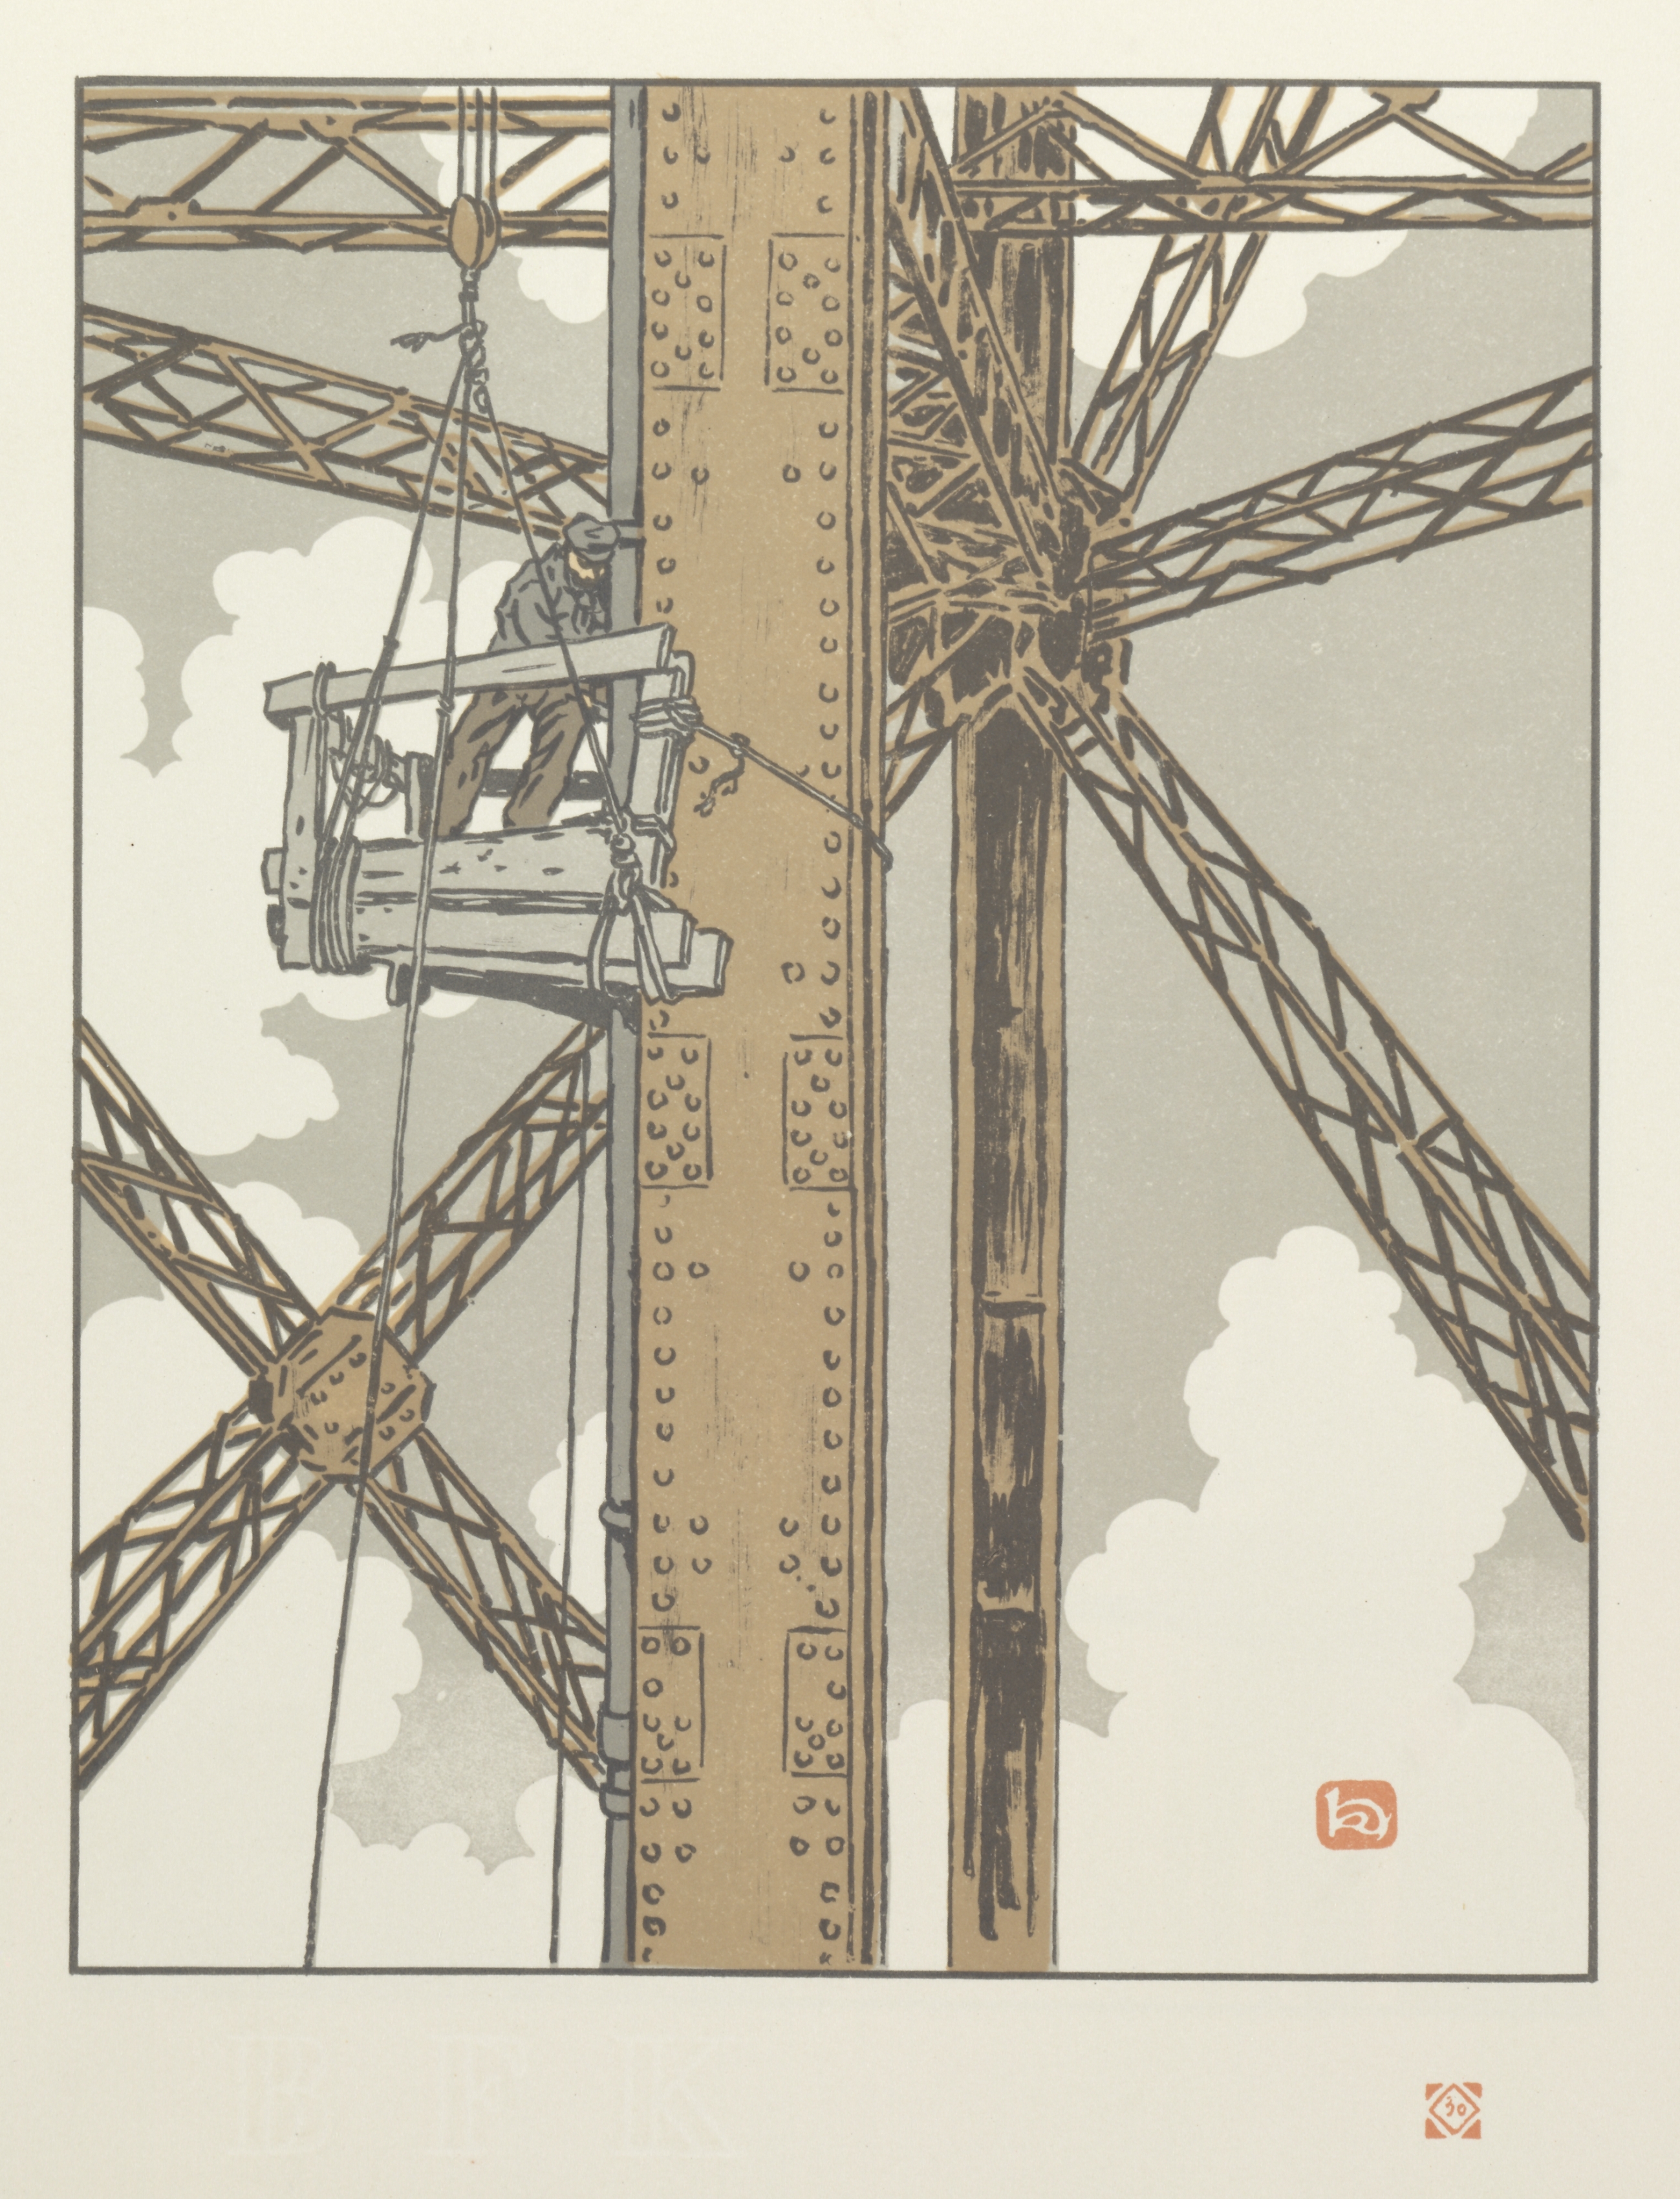 Thirty-Six Views of the Eiffel Tower: Ouvrier plombier dans la Tour